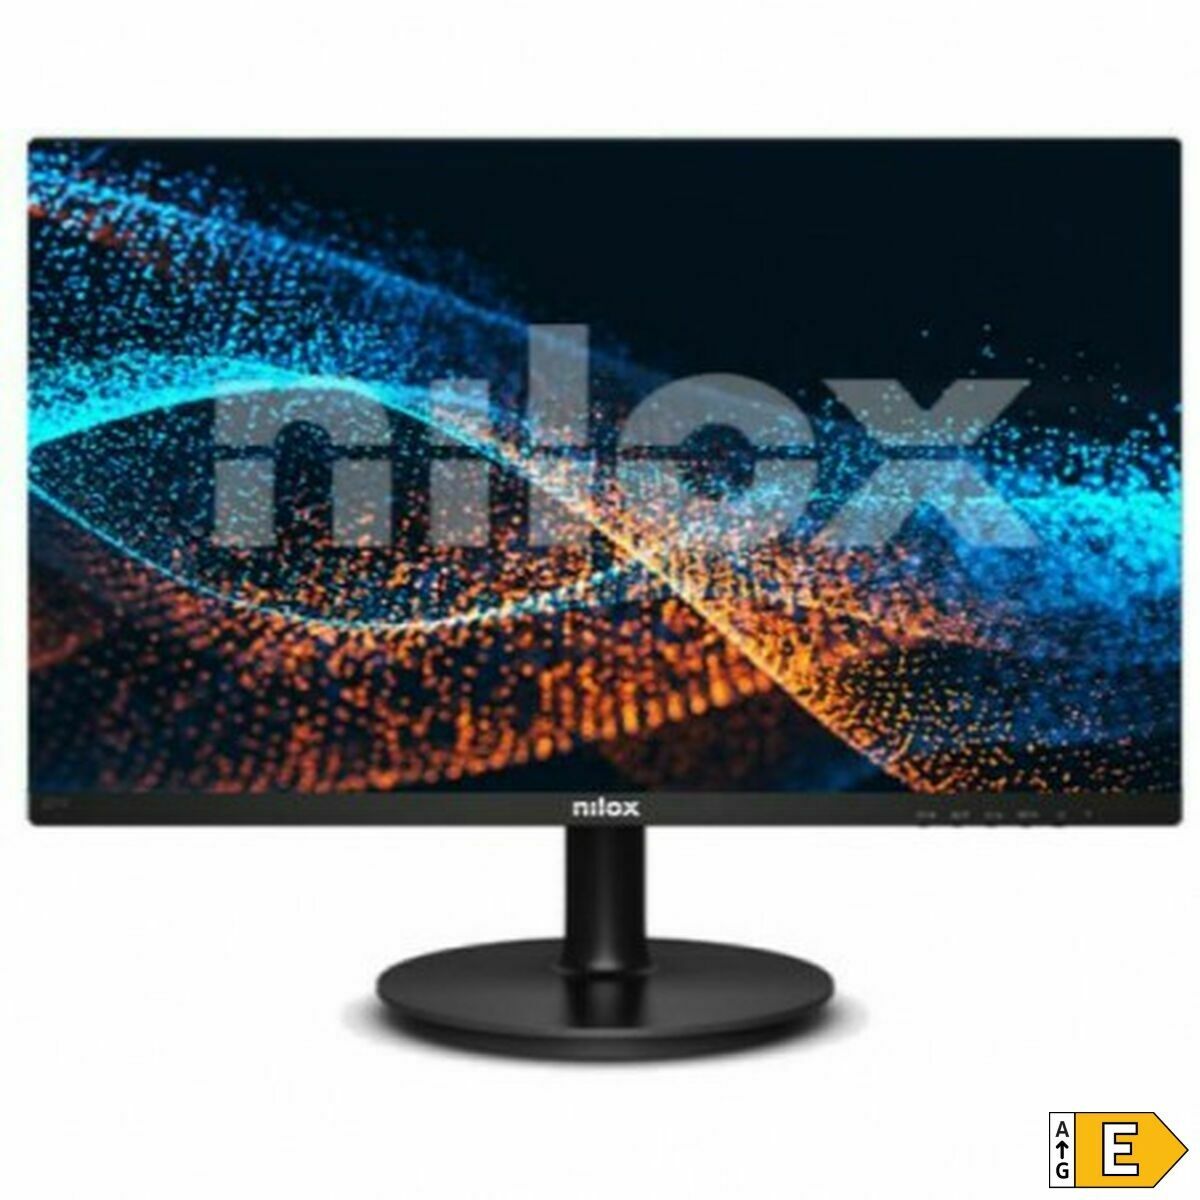 Monitor Nilox Nxm19fhd01 LED 18